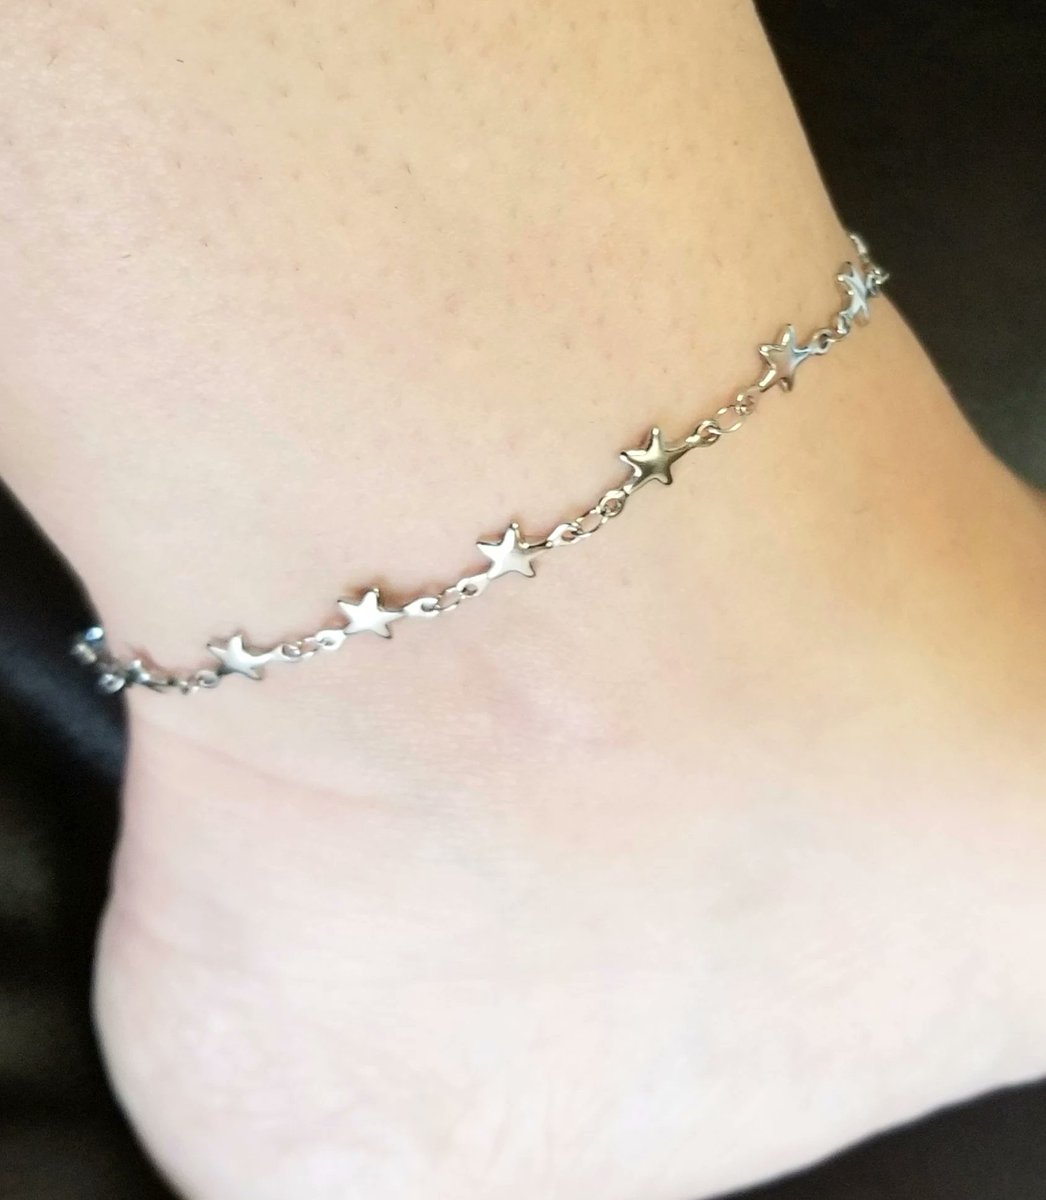 Silver Star Anklet, Star Ankle Bracelet, Star Jewelry #anklet #anklets #star #stars #staranklet #starjewelry #silveranklet #giftsforher #handmadejewelry #gift #gifts #christmasgifts #christmasgift #handmadegifts #Etsy 

etsy.me/3RKhS3u via @Etsy